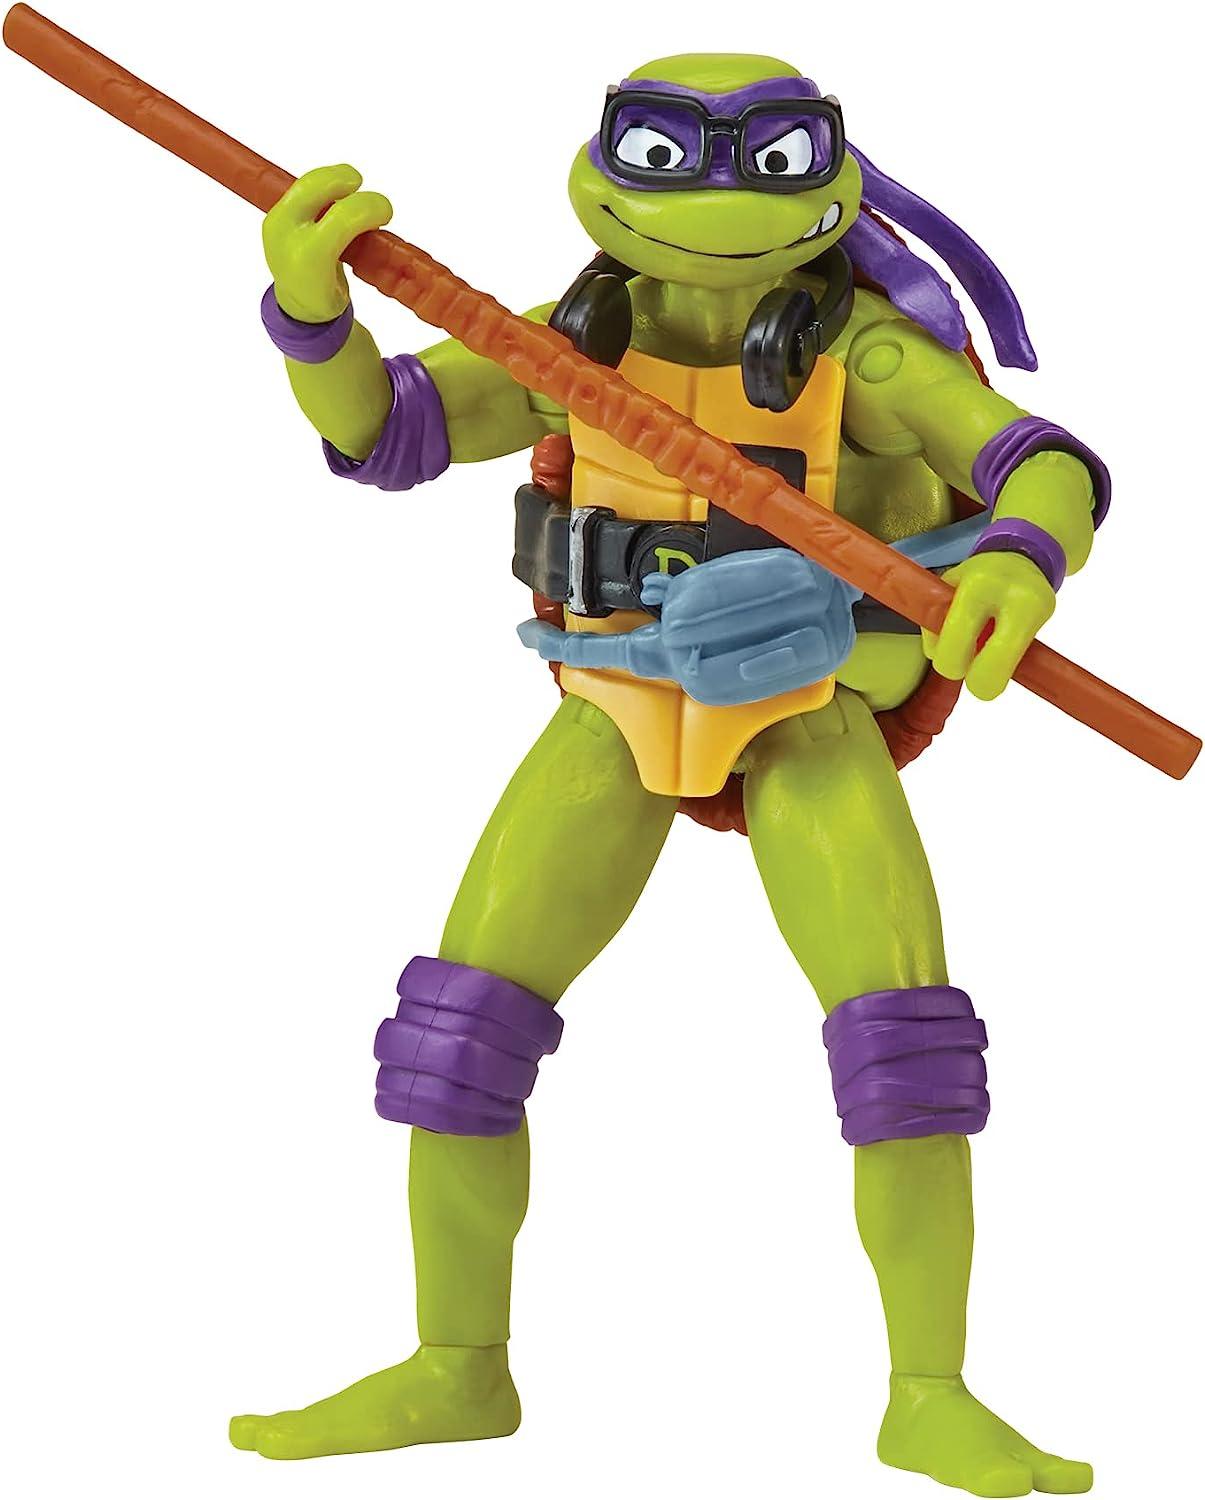 Teenage Mutant Ninja Turtles DONATELLO Mutant Mayhem